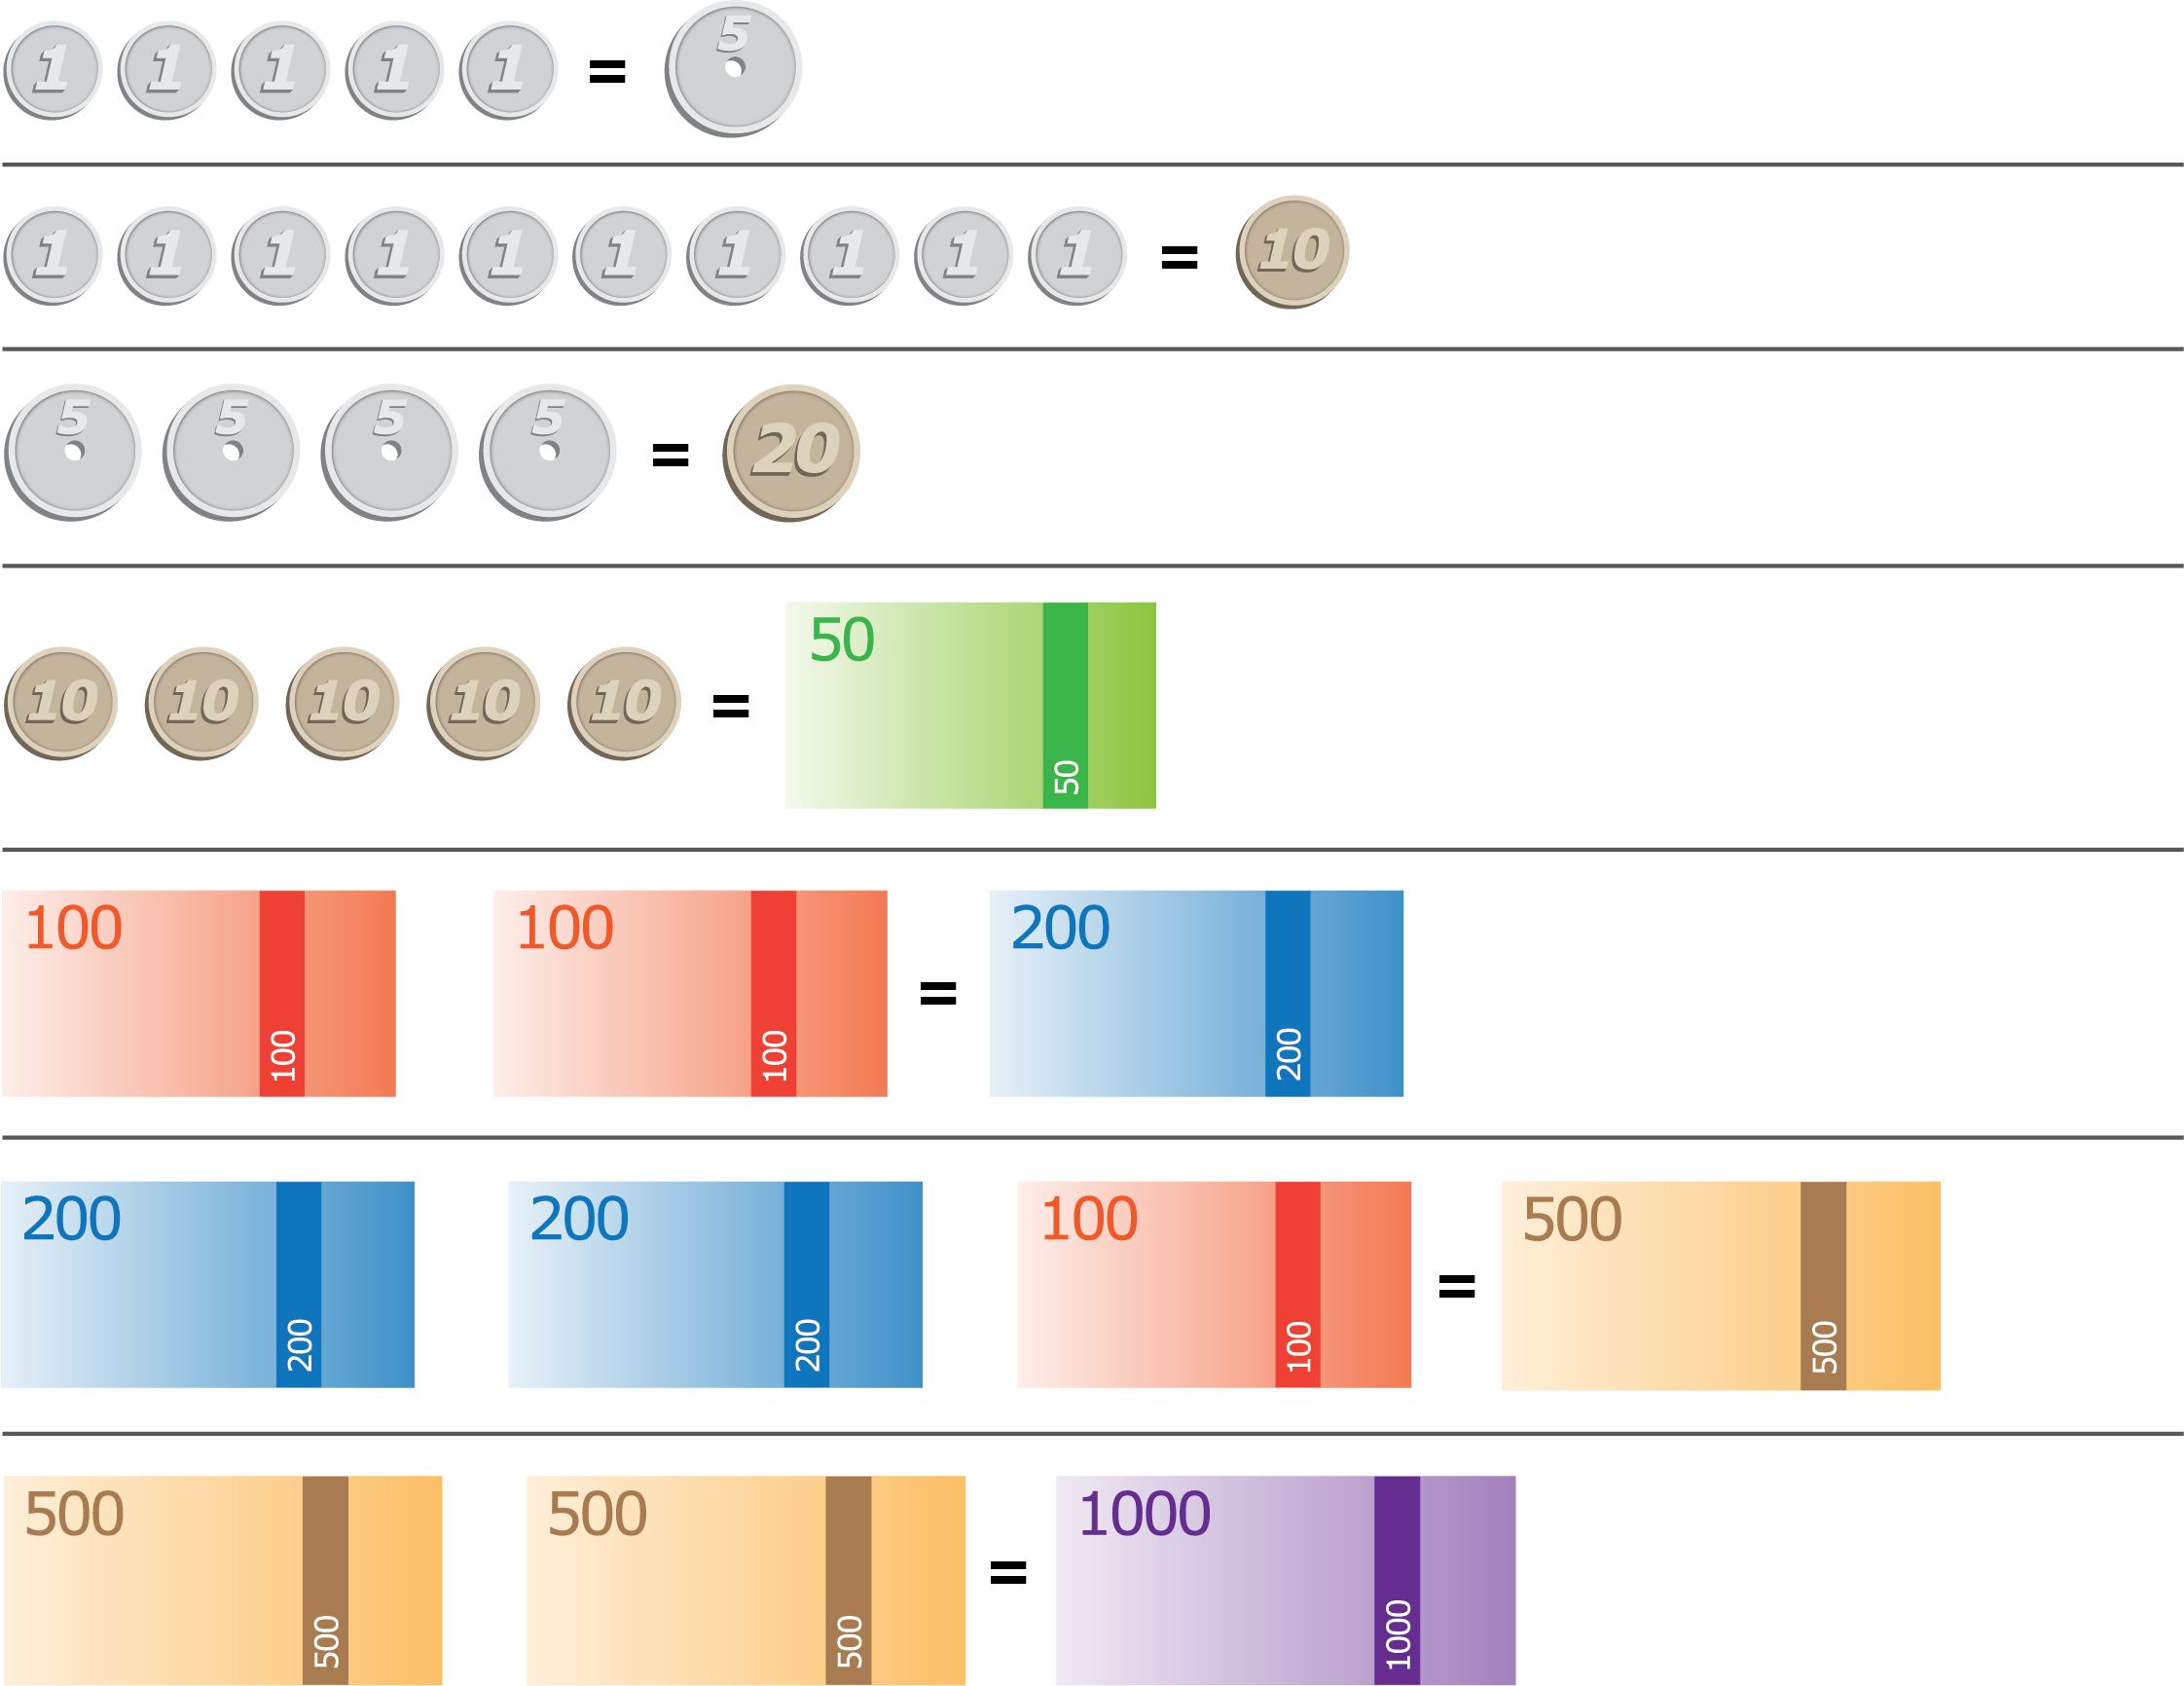 Sammenhenger mellom ulike mynter og sedler